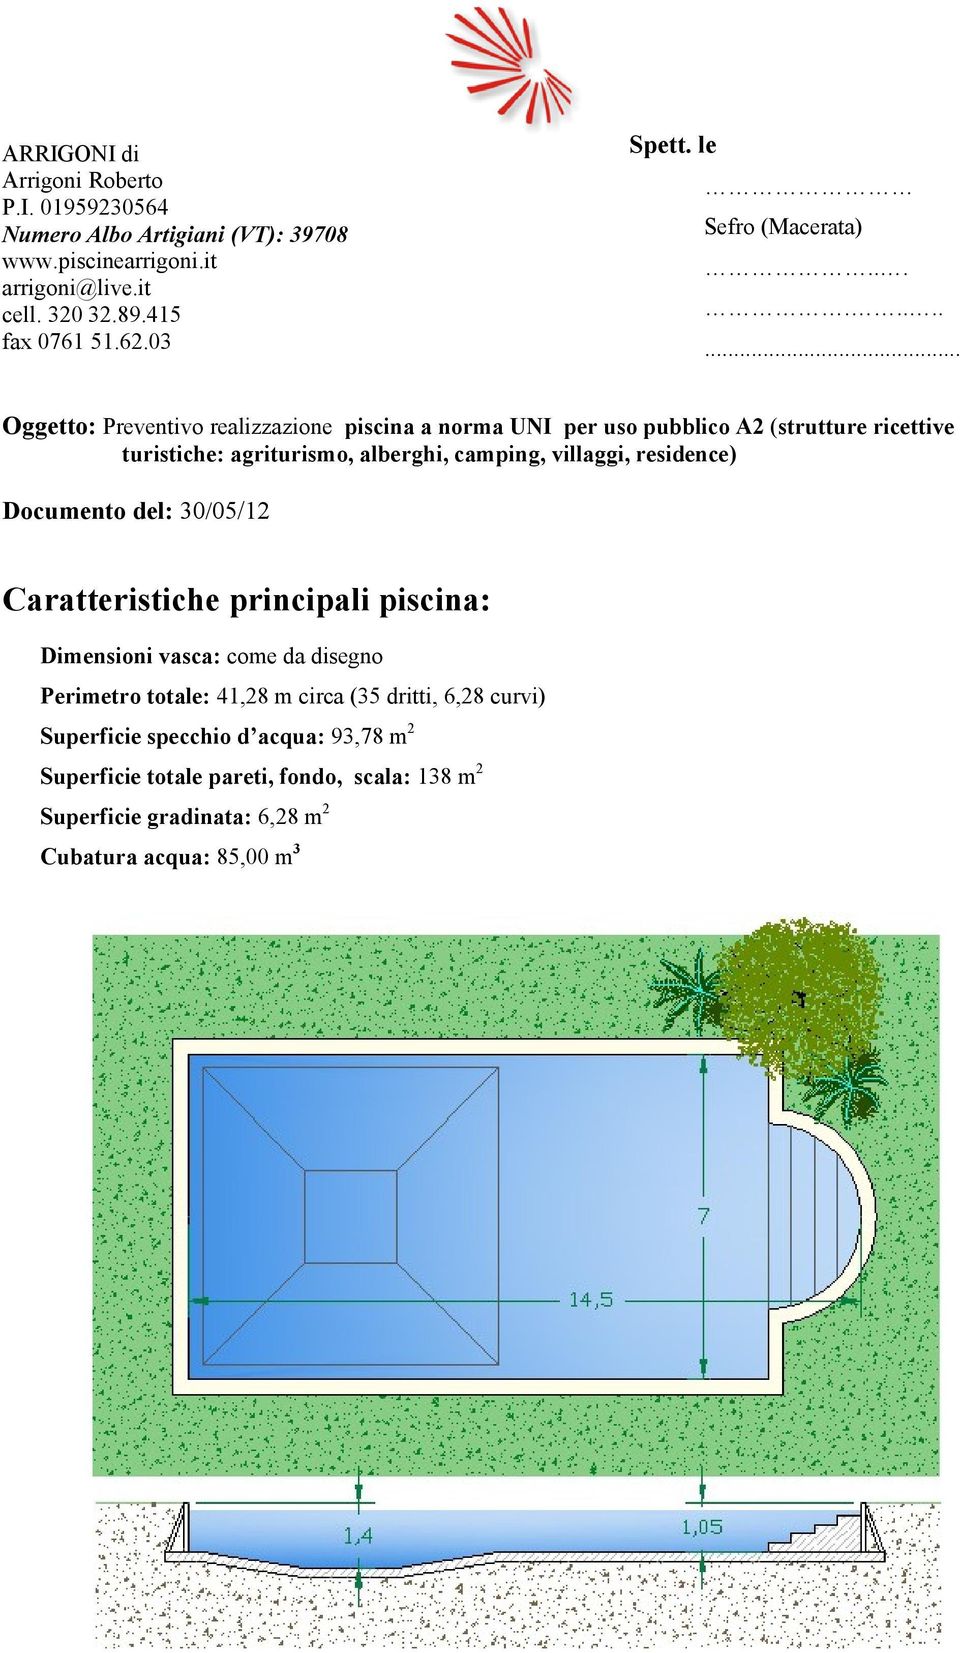 .......... Oggetto: Preventivo realizzazione piscina a norma UNI per uso pubblico A2 (strutture ricettive turistiche: agriturismo, alberghi, camping, villaggi,